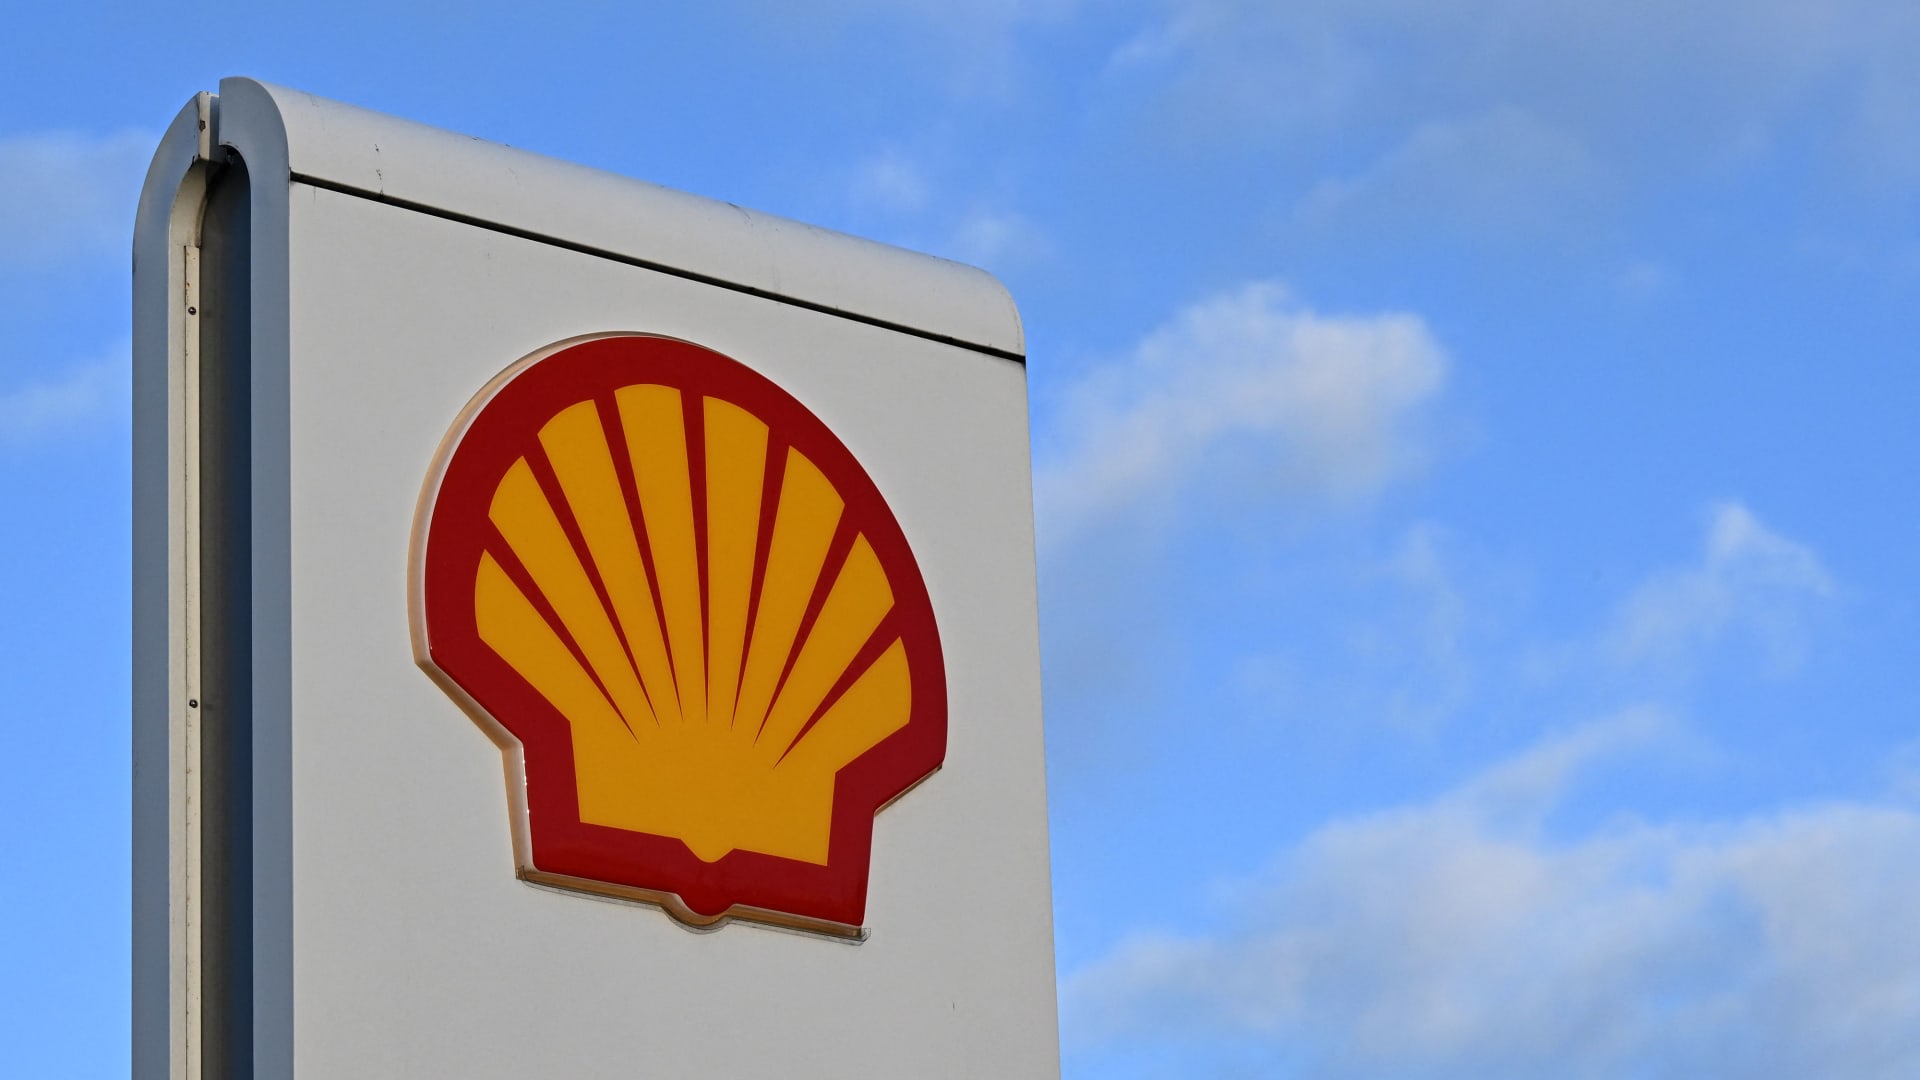 Нарастващи печалби на Shell: $6.2 милиарда печалби на фона на колебания в цените на петрола